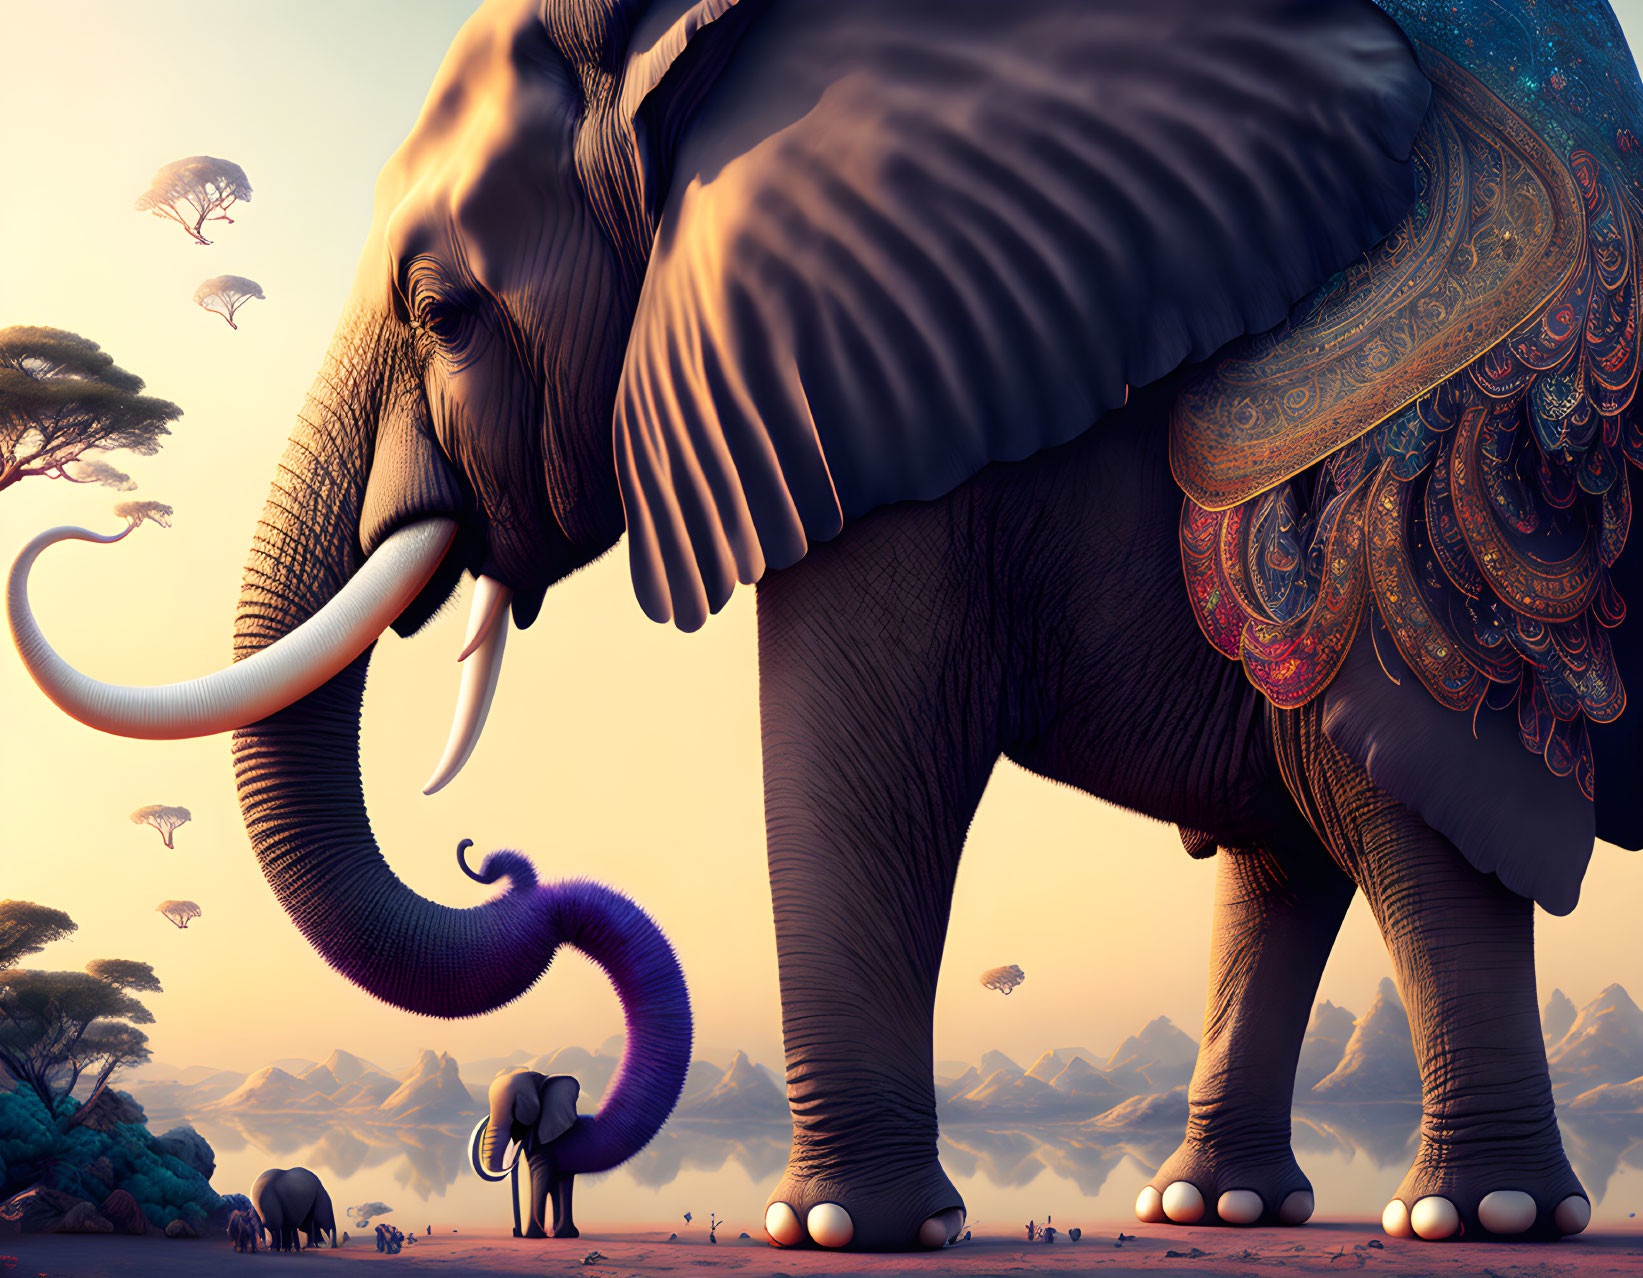 Giant psychedelic elephant 